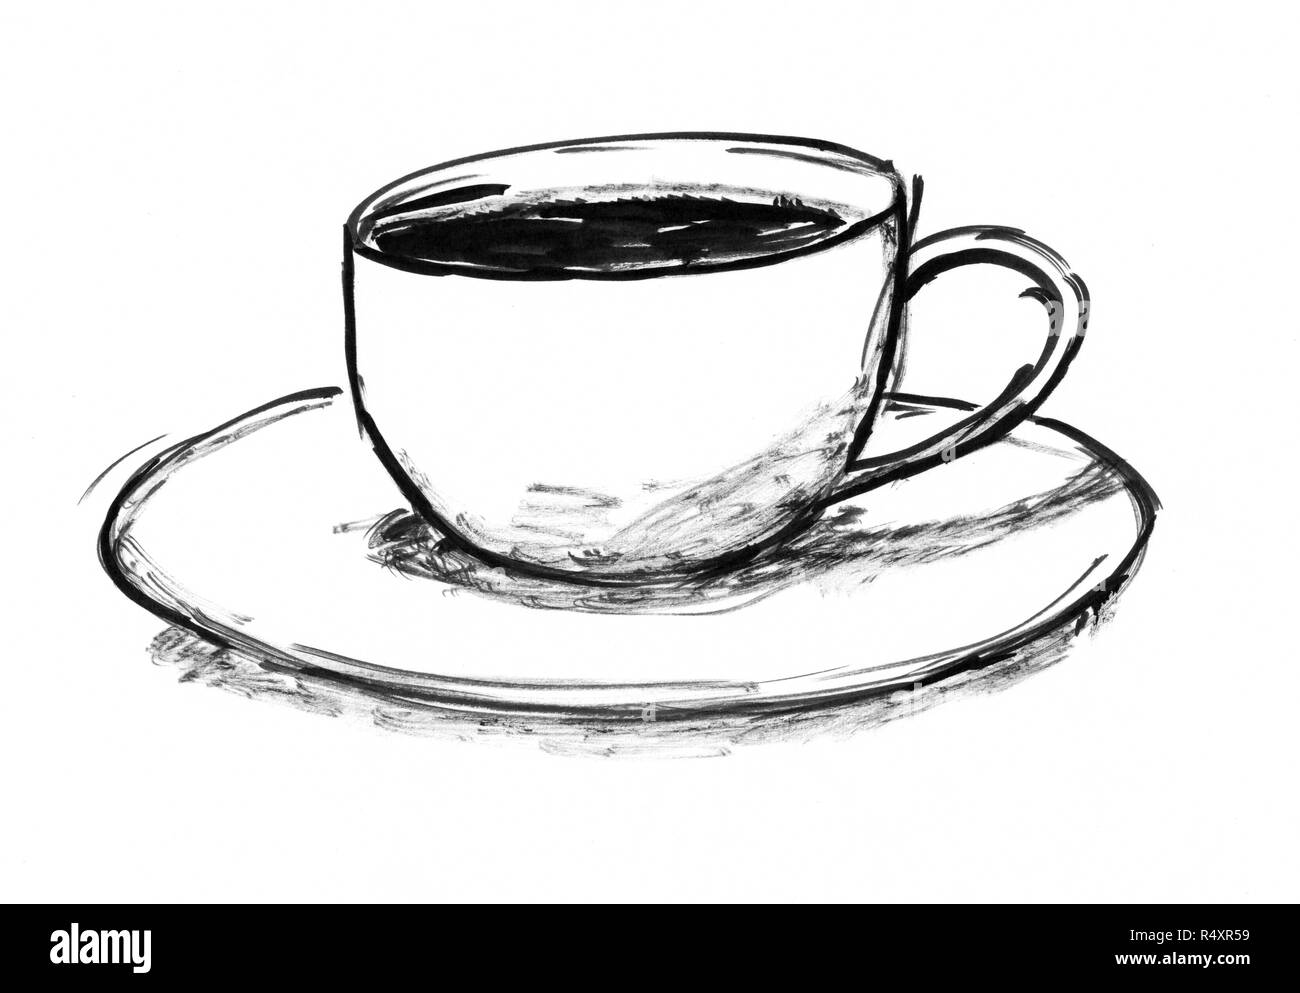 Inchiostro nero disegno a mano della tazza di caffè Foto Stock